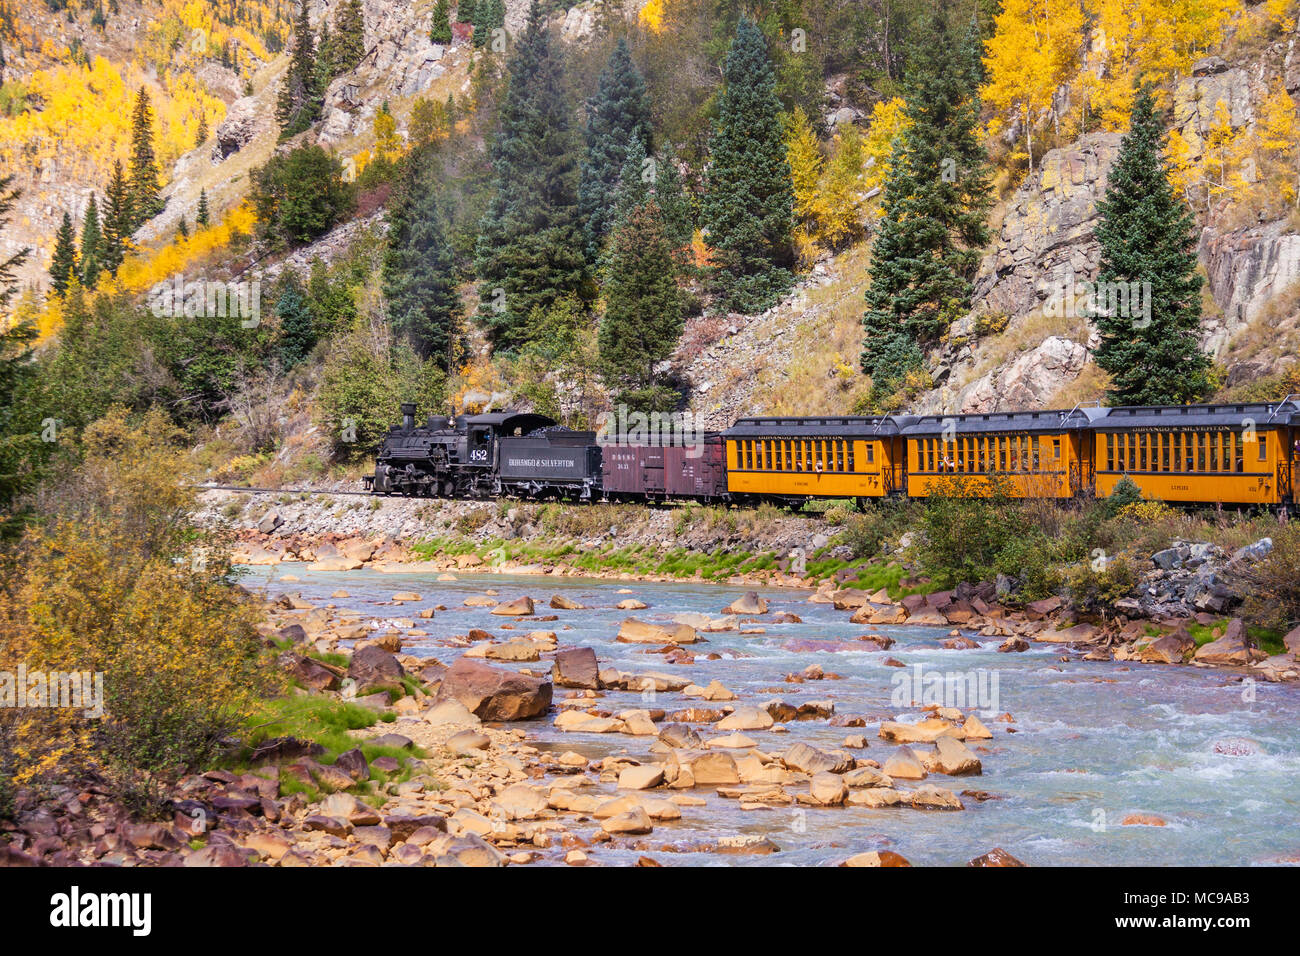 Durango und Silverton Schmalspurbahn historische szenische Fahrt mit dem Zug von Durango nach Silverton in Colorado. Stockfoto